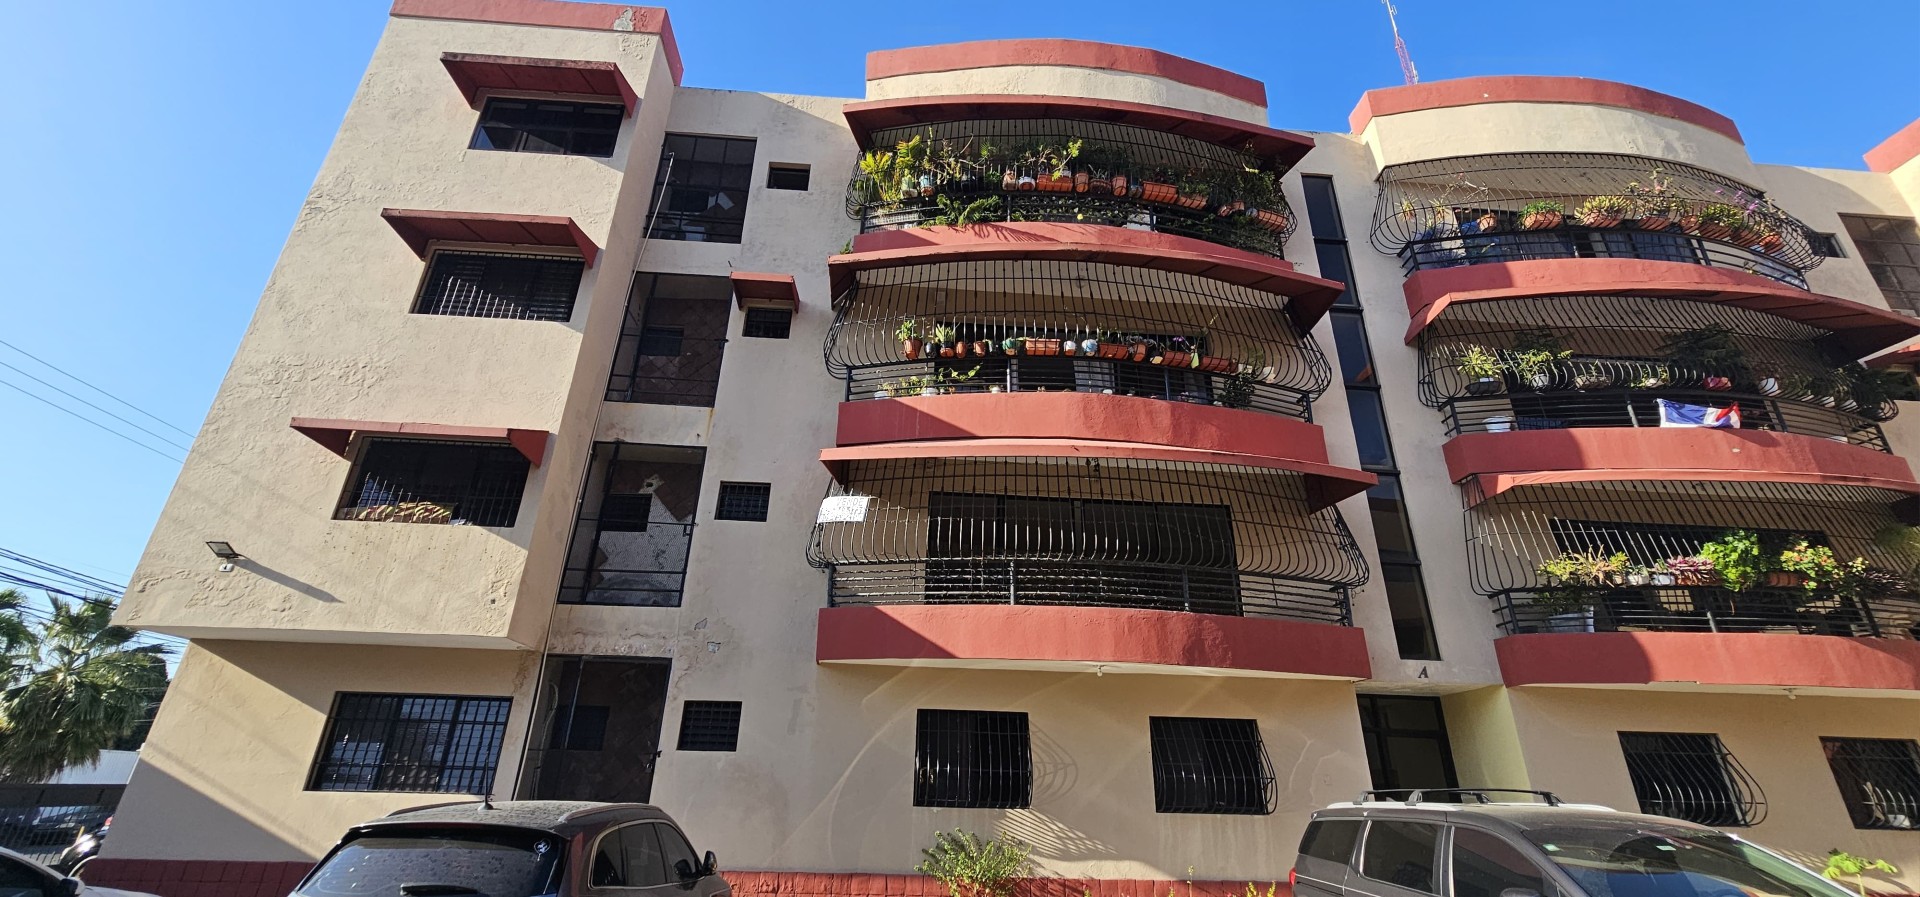 apartamentos - Vendo apartamento clásico en Los Prados 0